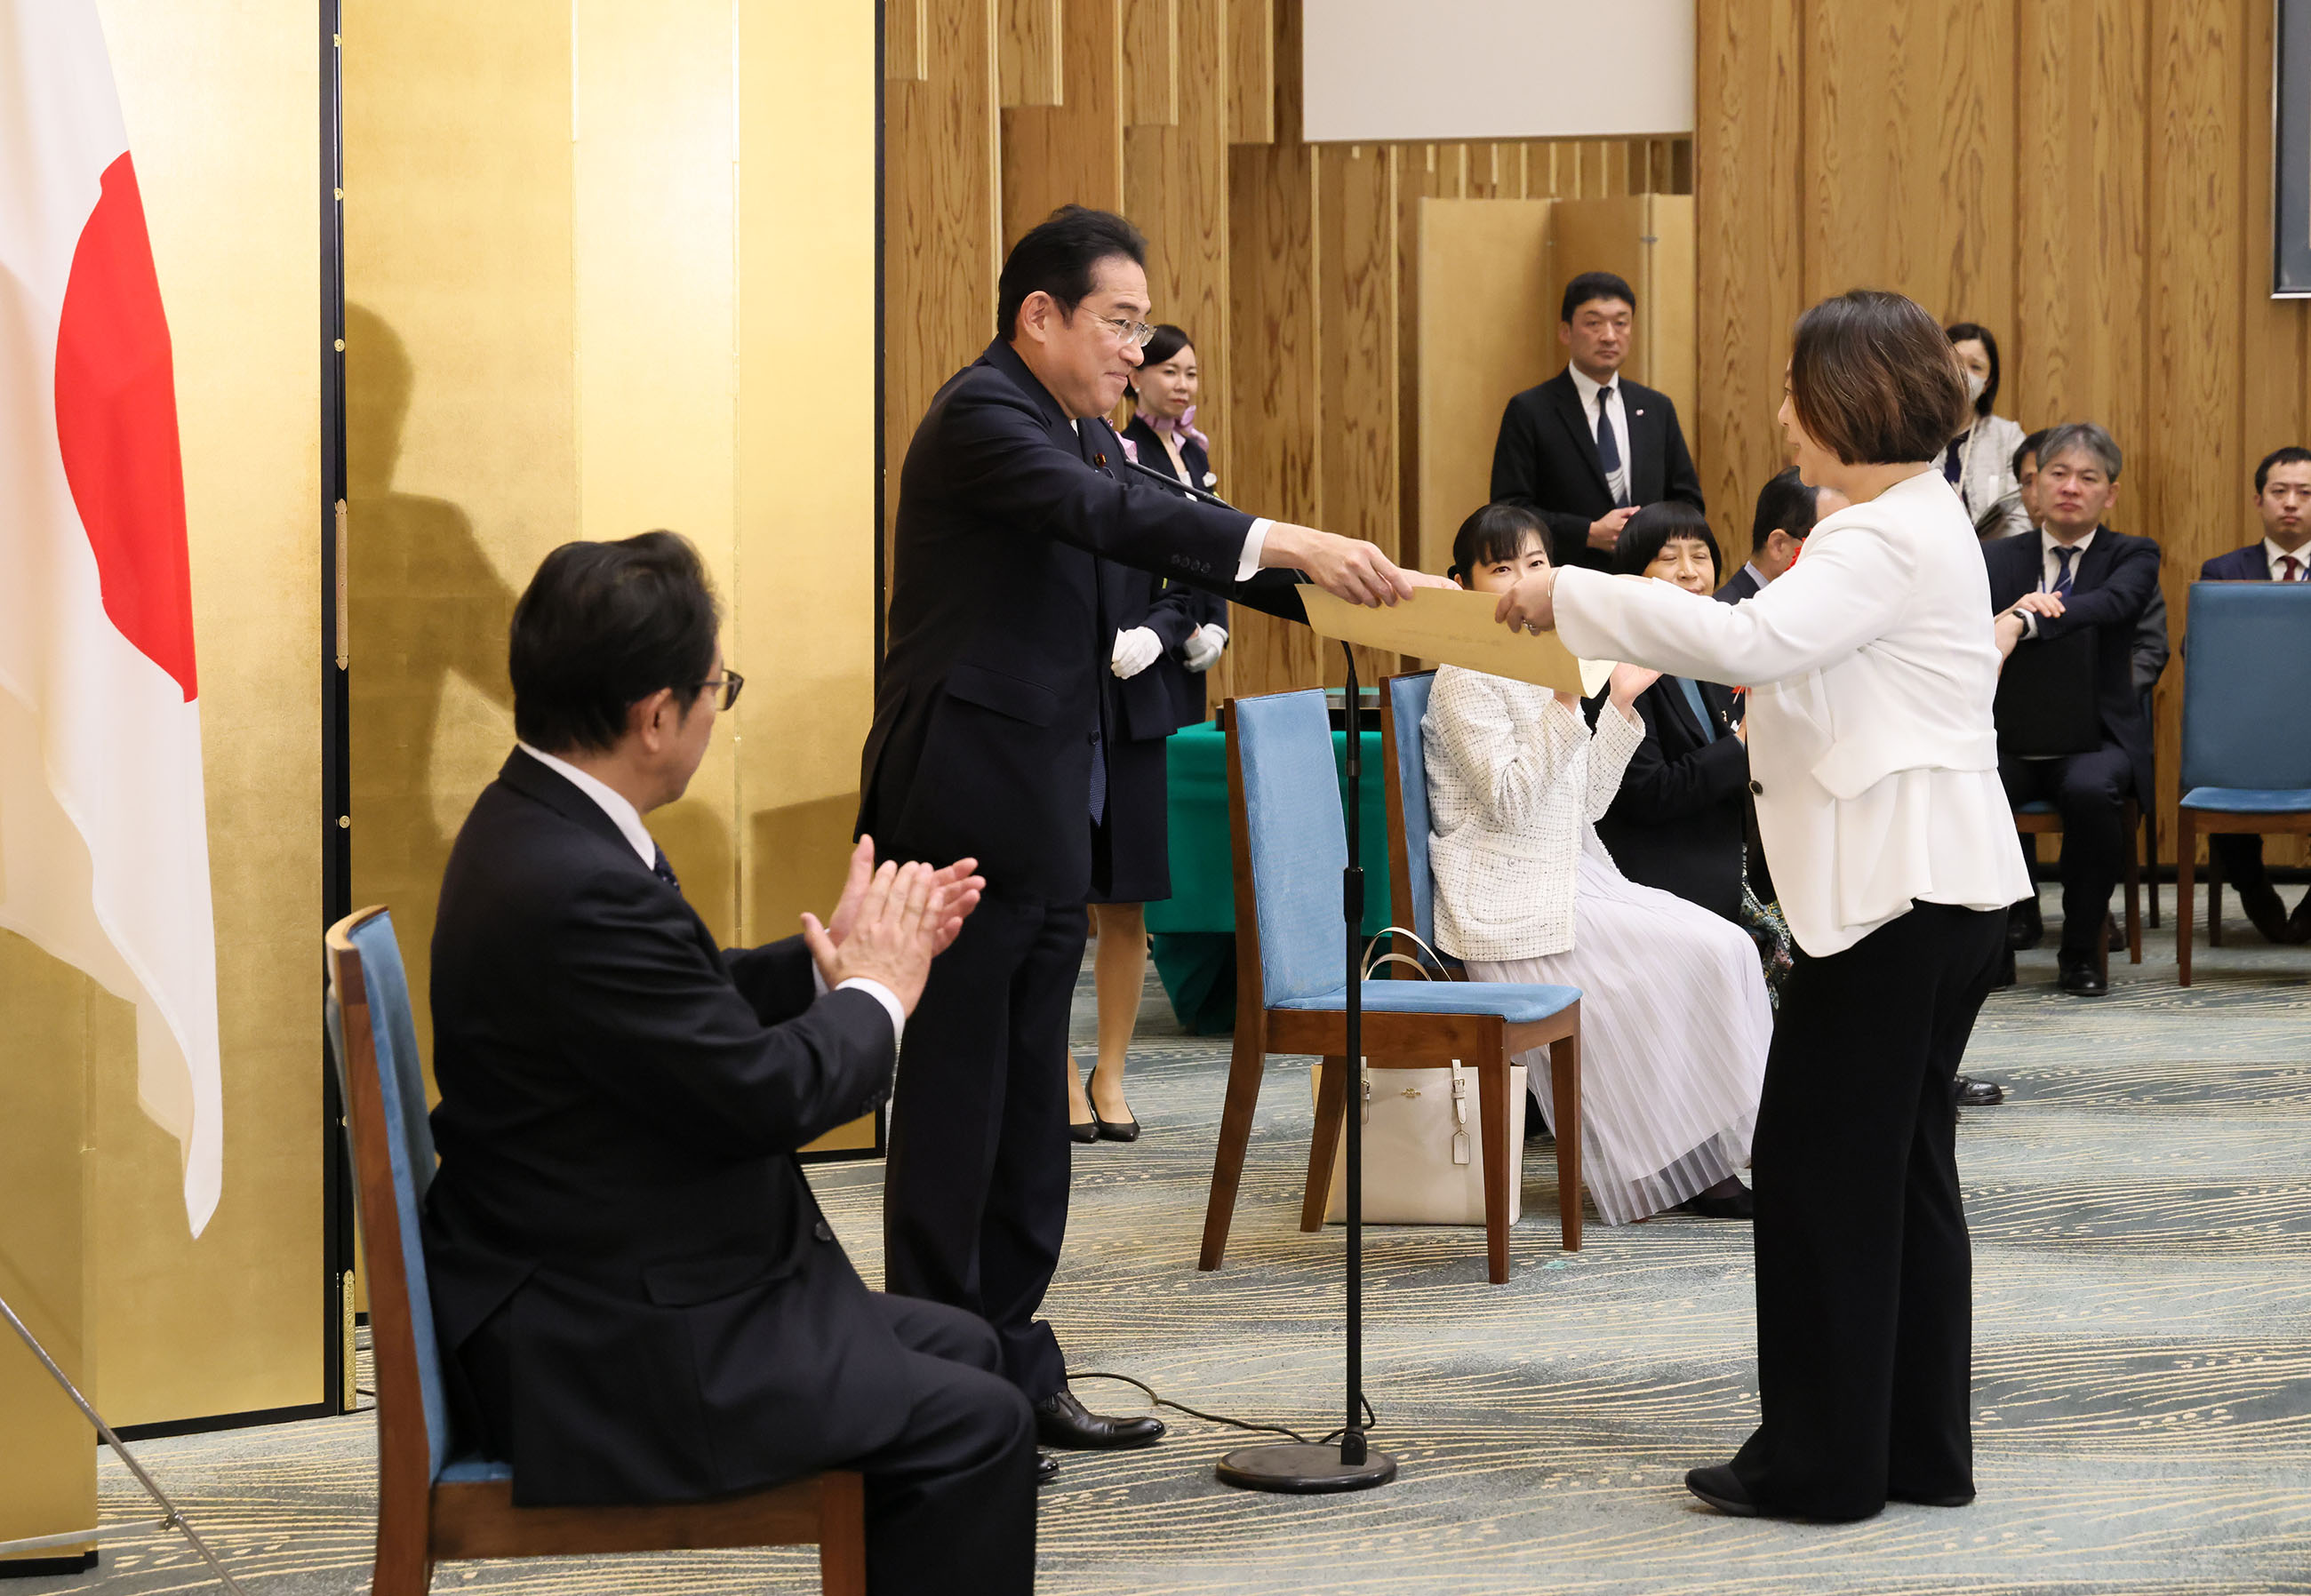 Shaping the Future: “Kodomo Mannaka Award” Ceremony